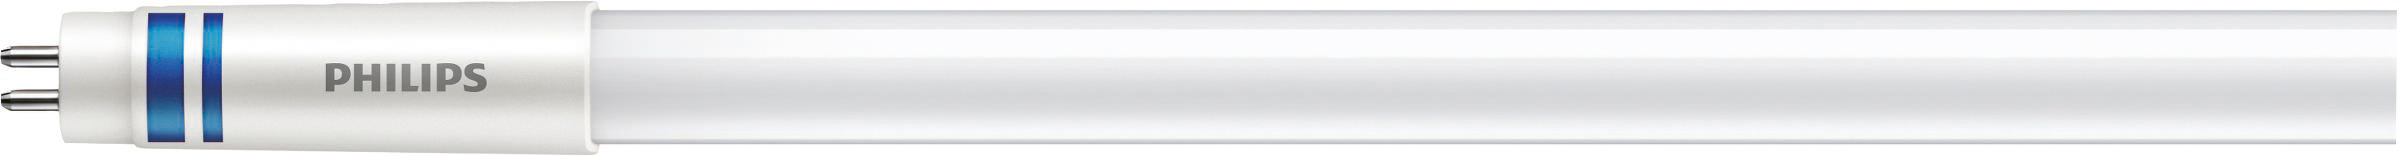 Philips Lighting LED-Tube T5 f. EVG G5, 840, 1149mm MAS LEDtube#74953800 günstig online kaufen